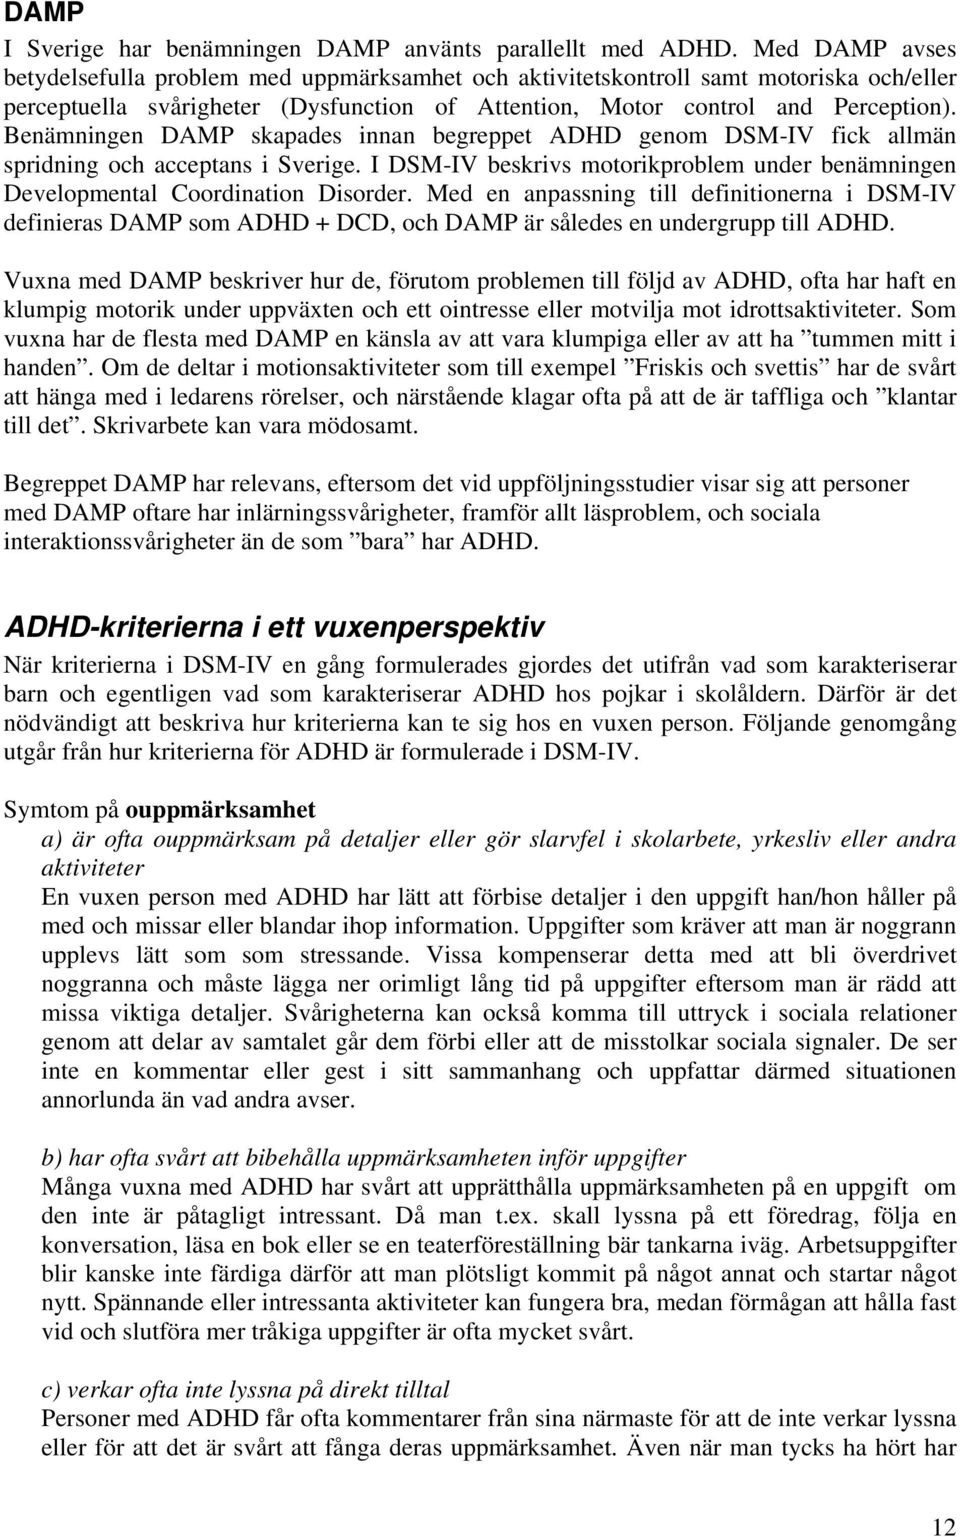 Benämningen DAMP skapades innan begreppet ADHD genom DSM-IV fick allmän spridning och acceptans i Sverige. I DSM-IV beskrivs motorikproblem under benämningen Developmental Coordination Disorder.